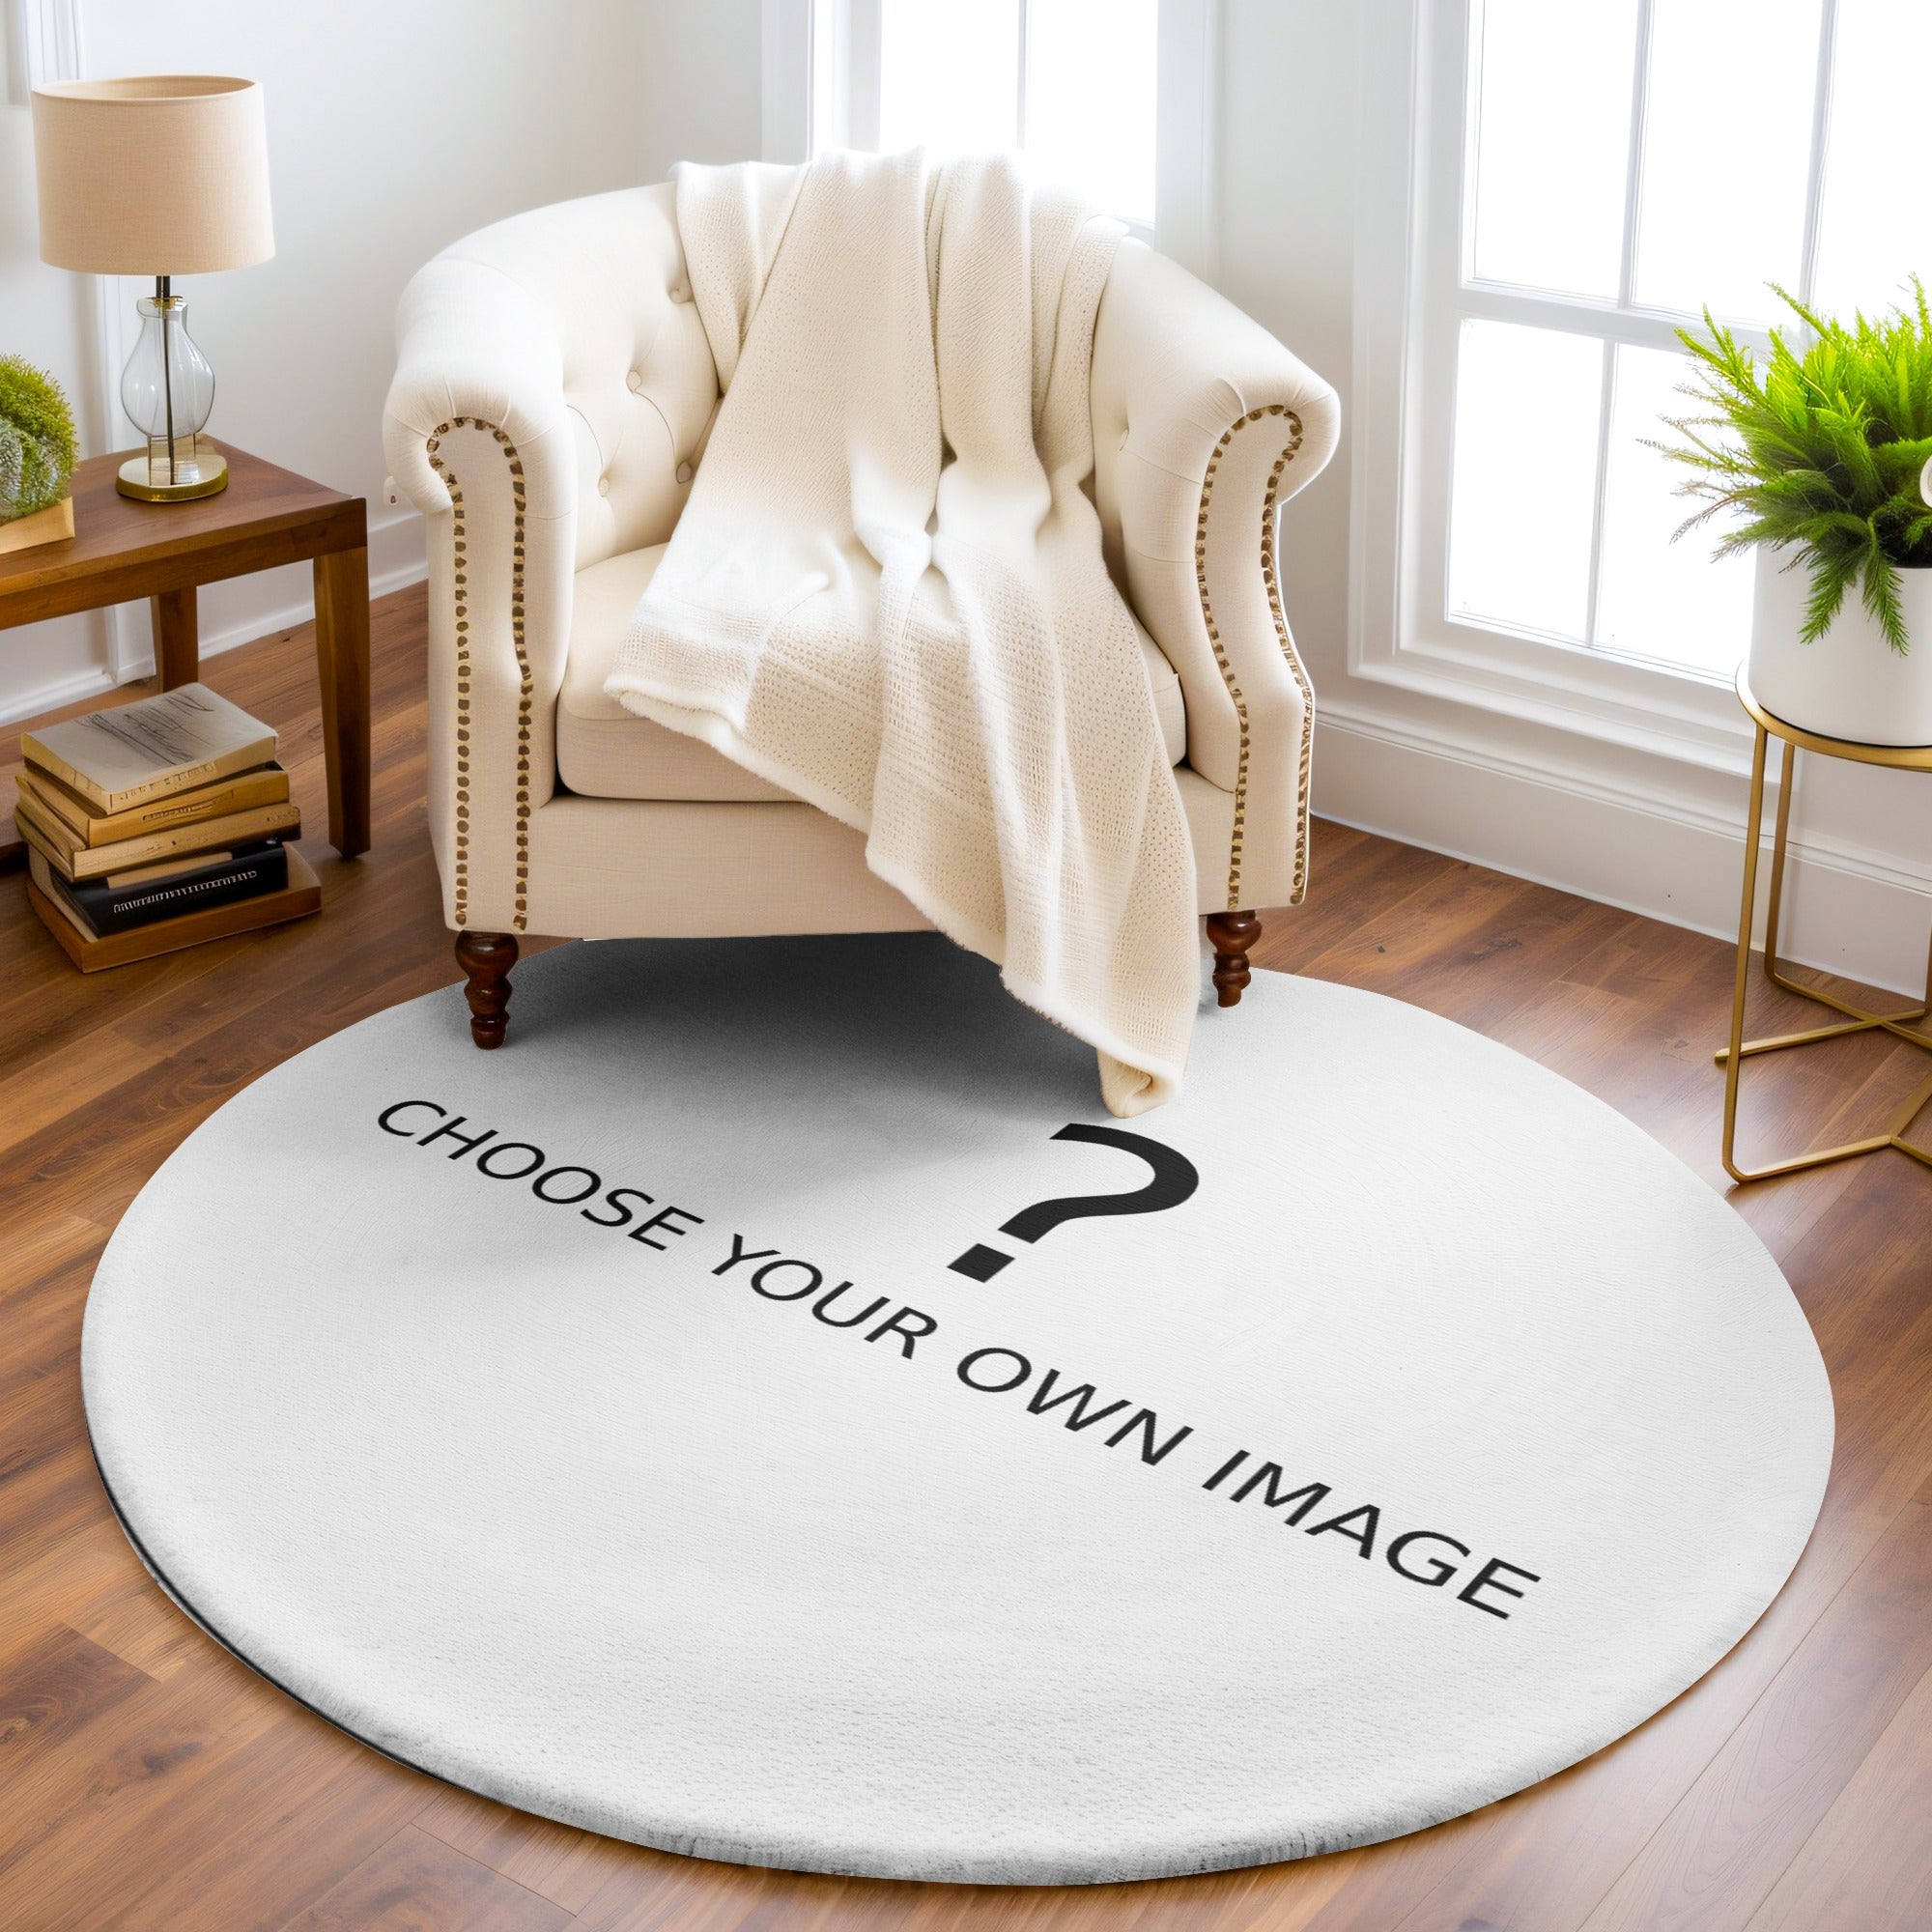 personalised image round rug image onto rug